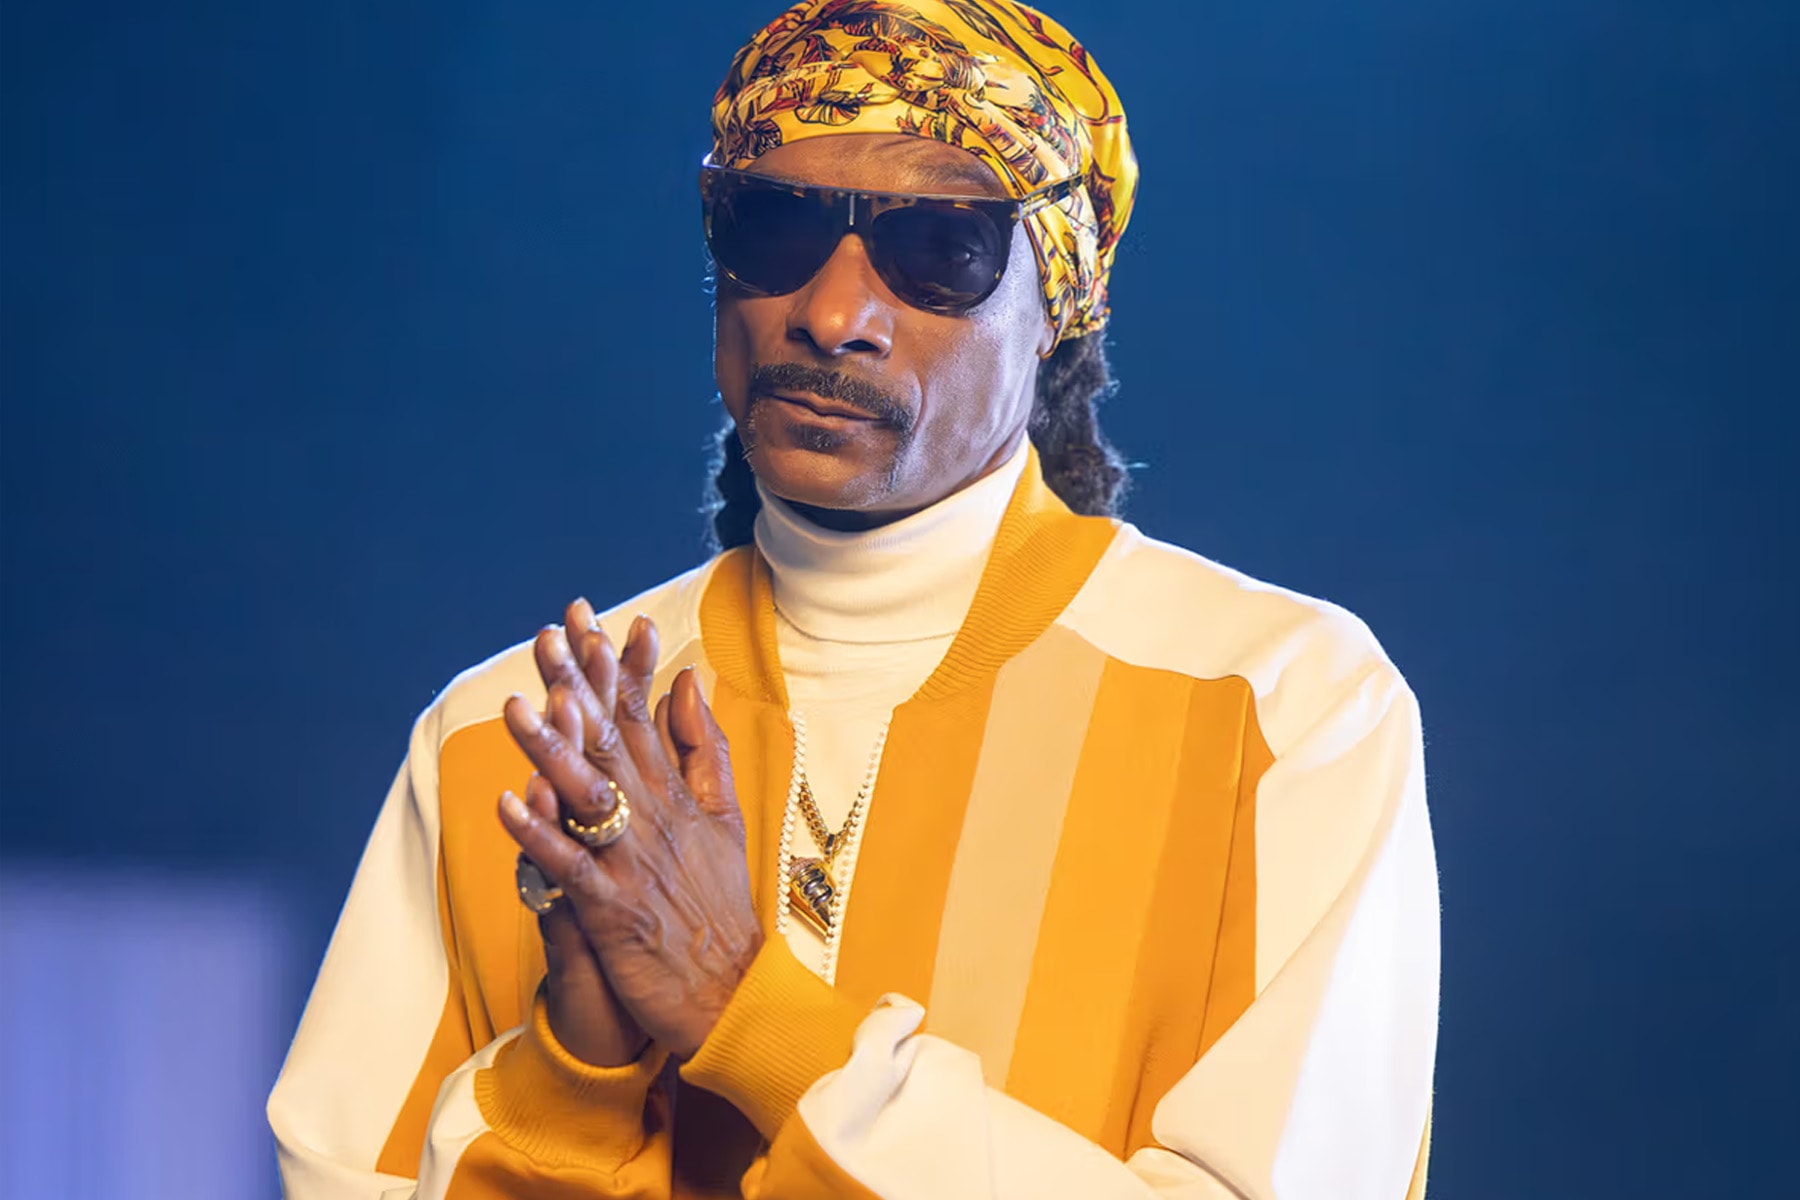 Snoop Dogg 透露自己僅從 Spotify 獲得 $4.5 萬美元分潤